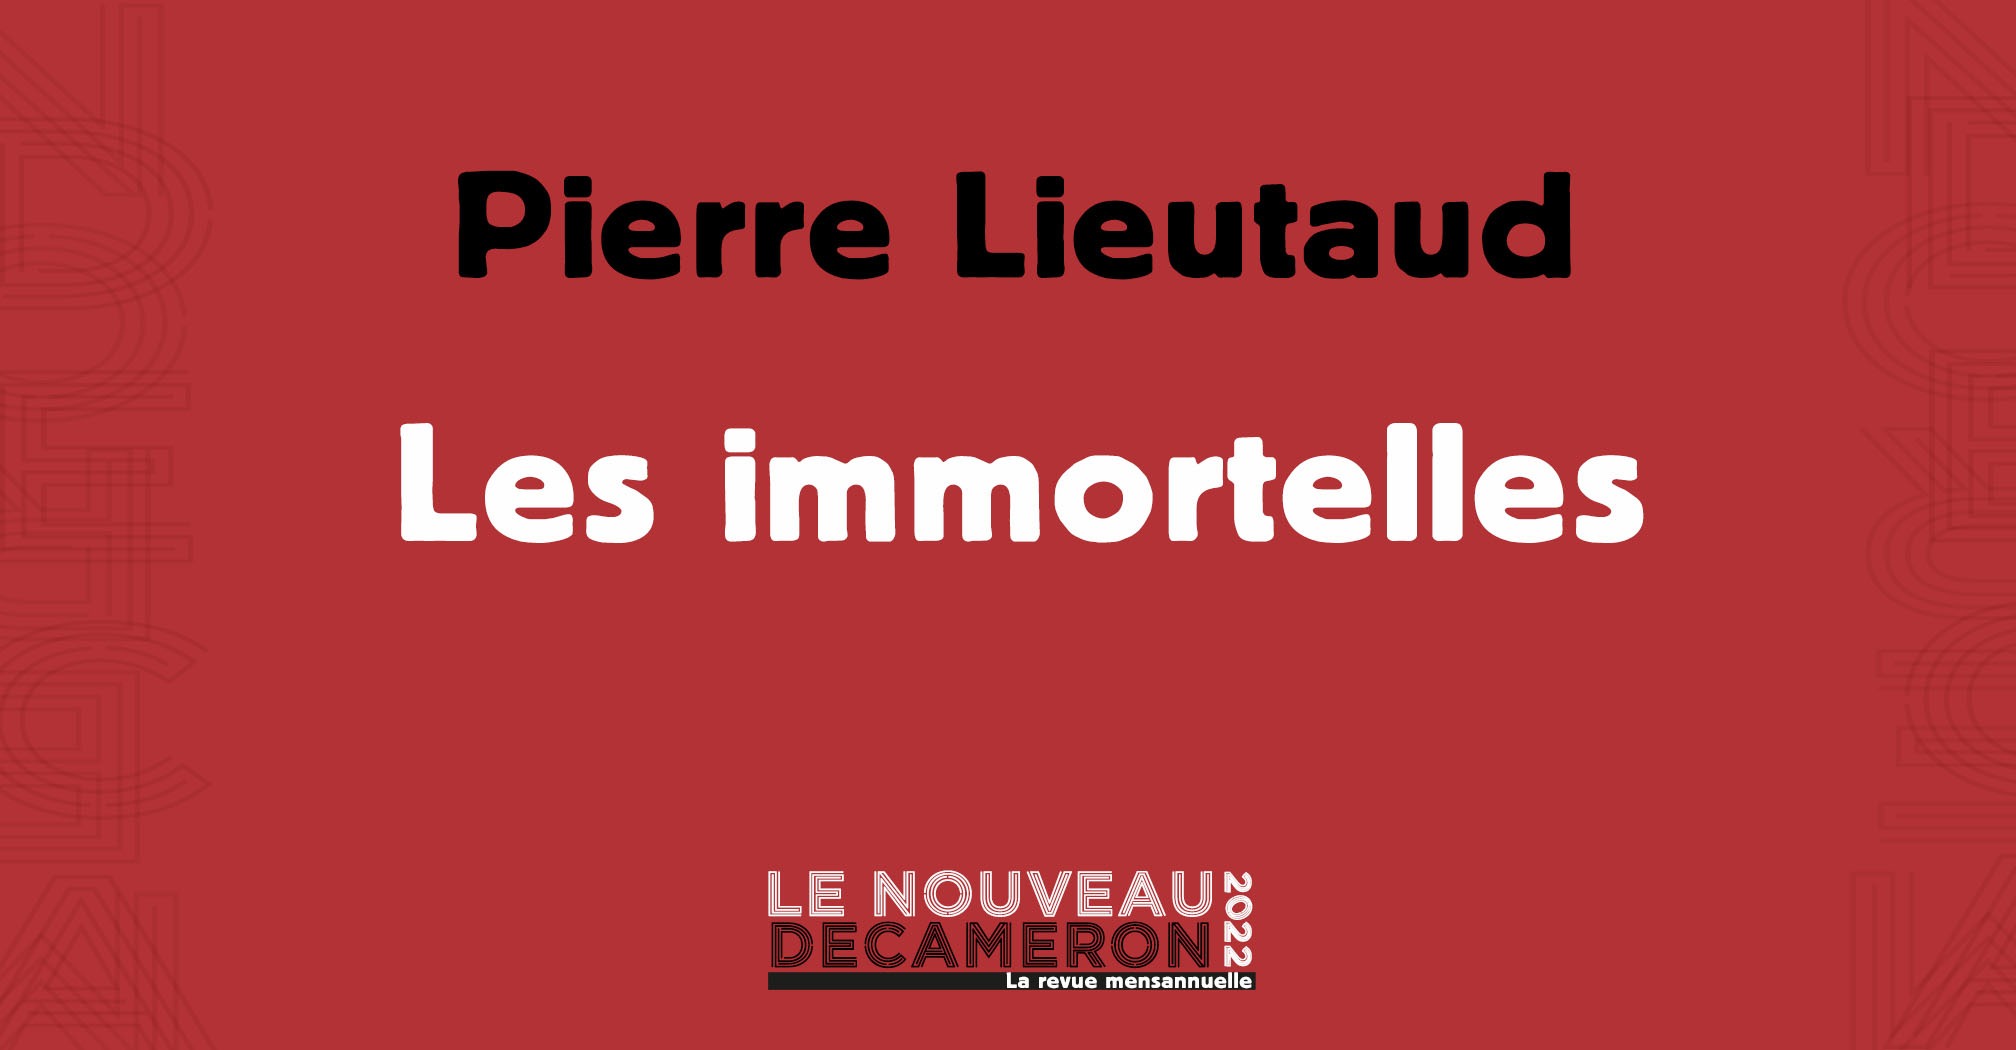 Pierre Lieutaud - Les immortelles